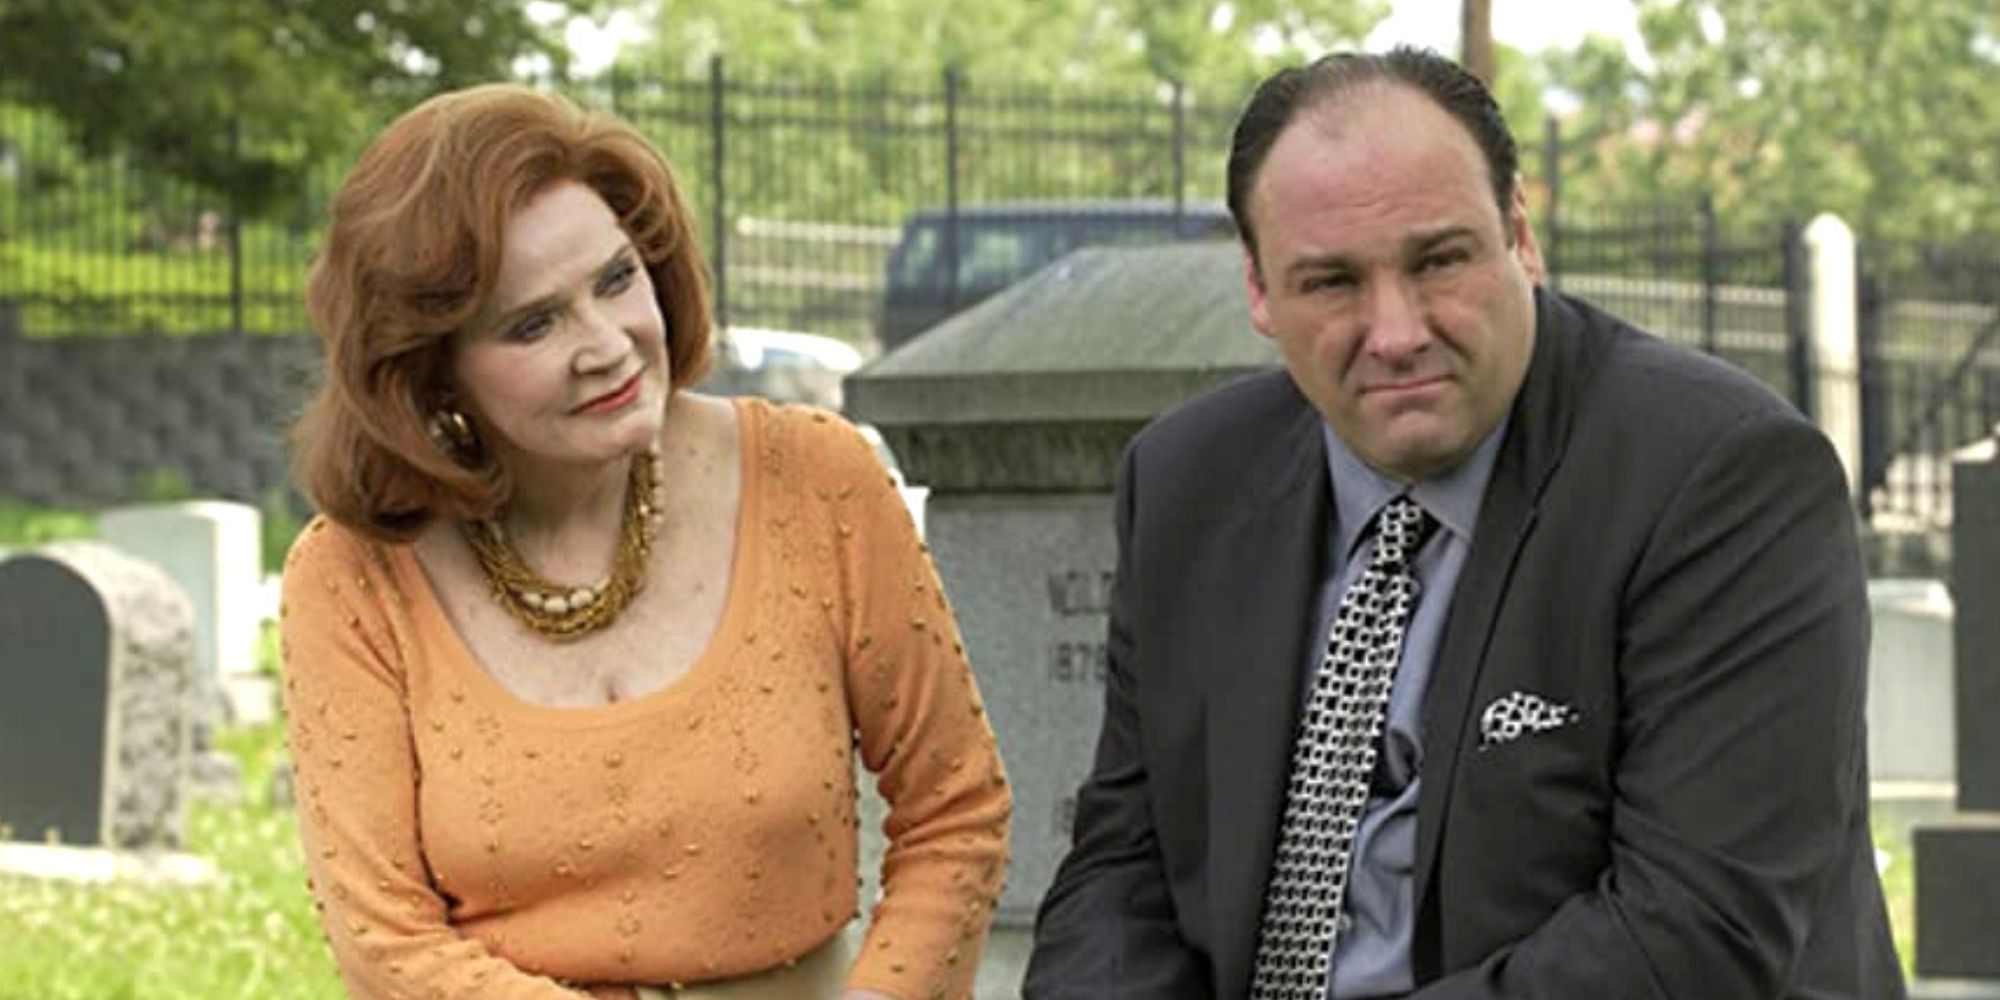 Polly Bergen assise à côté de James Gandolfini le regardant pendant qu'il regarde dans la direction opposée dans Les Sopranos.